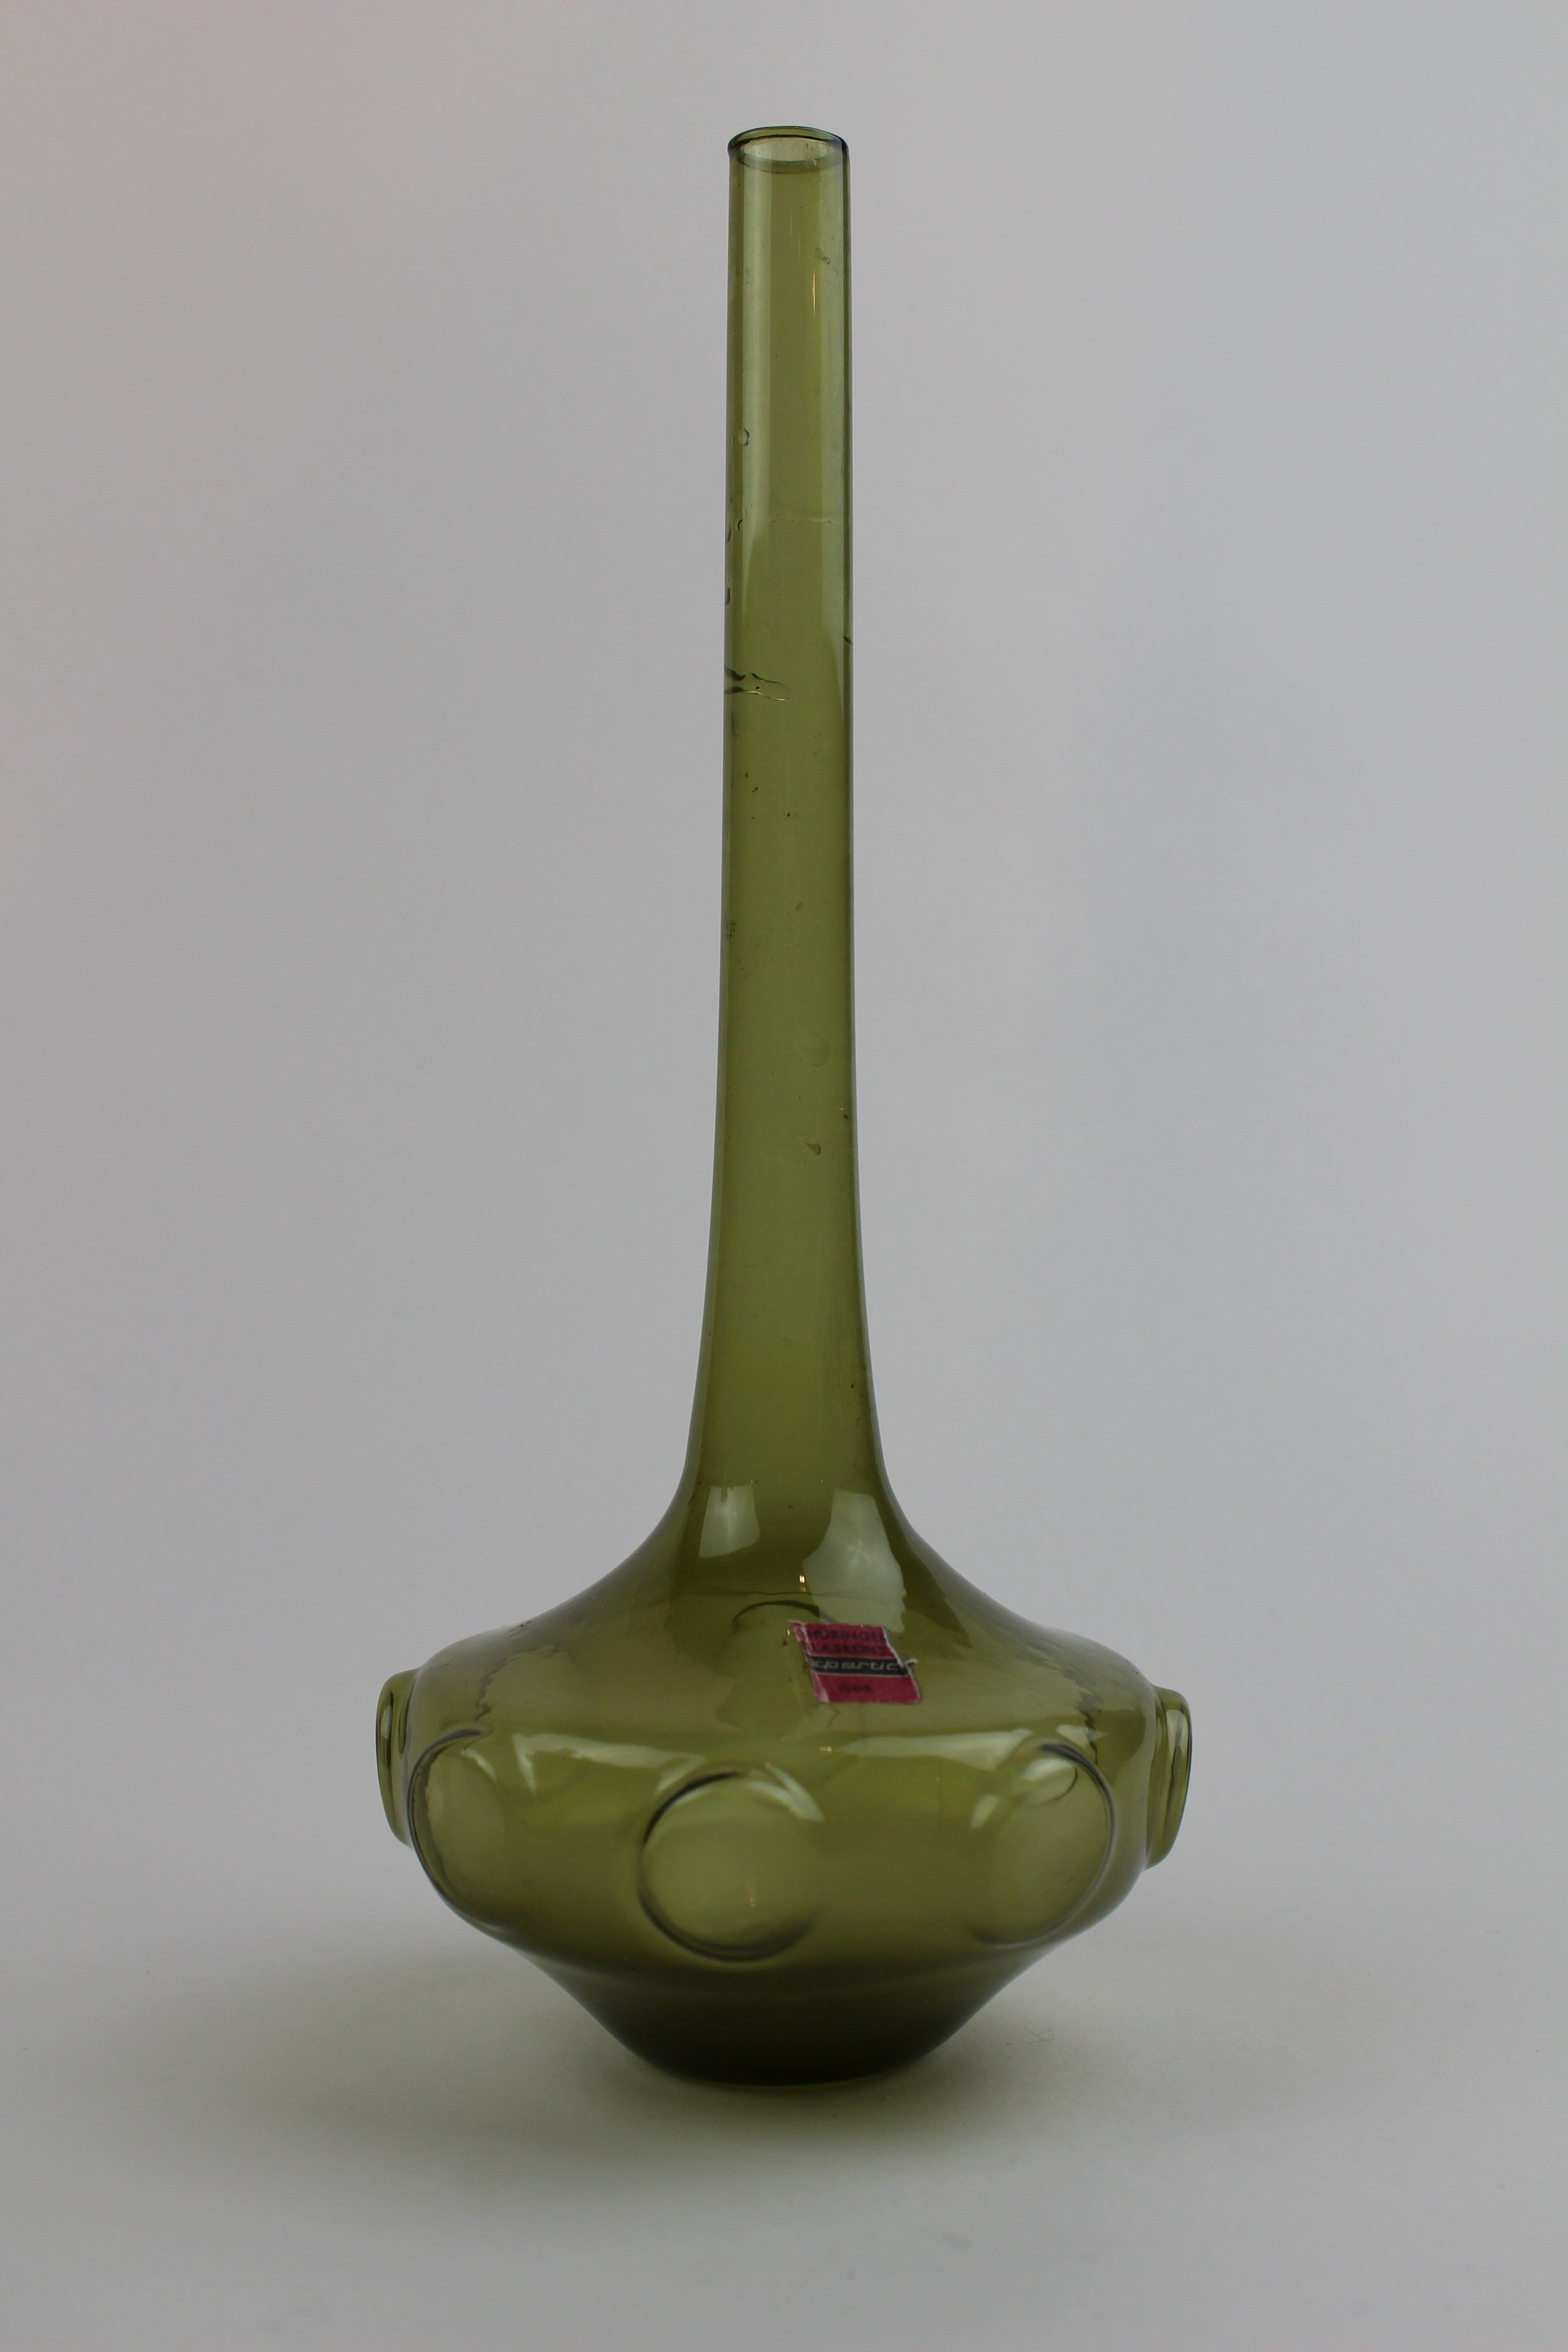 Saragossagrüne Vase mit Aufkleber (Museum Baruther Glashütte CC BY-NC-SA)